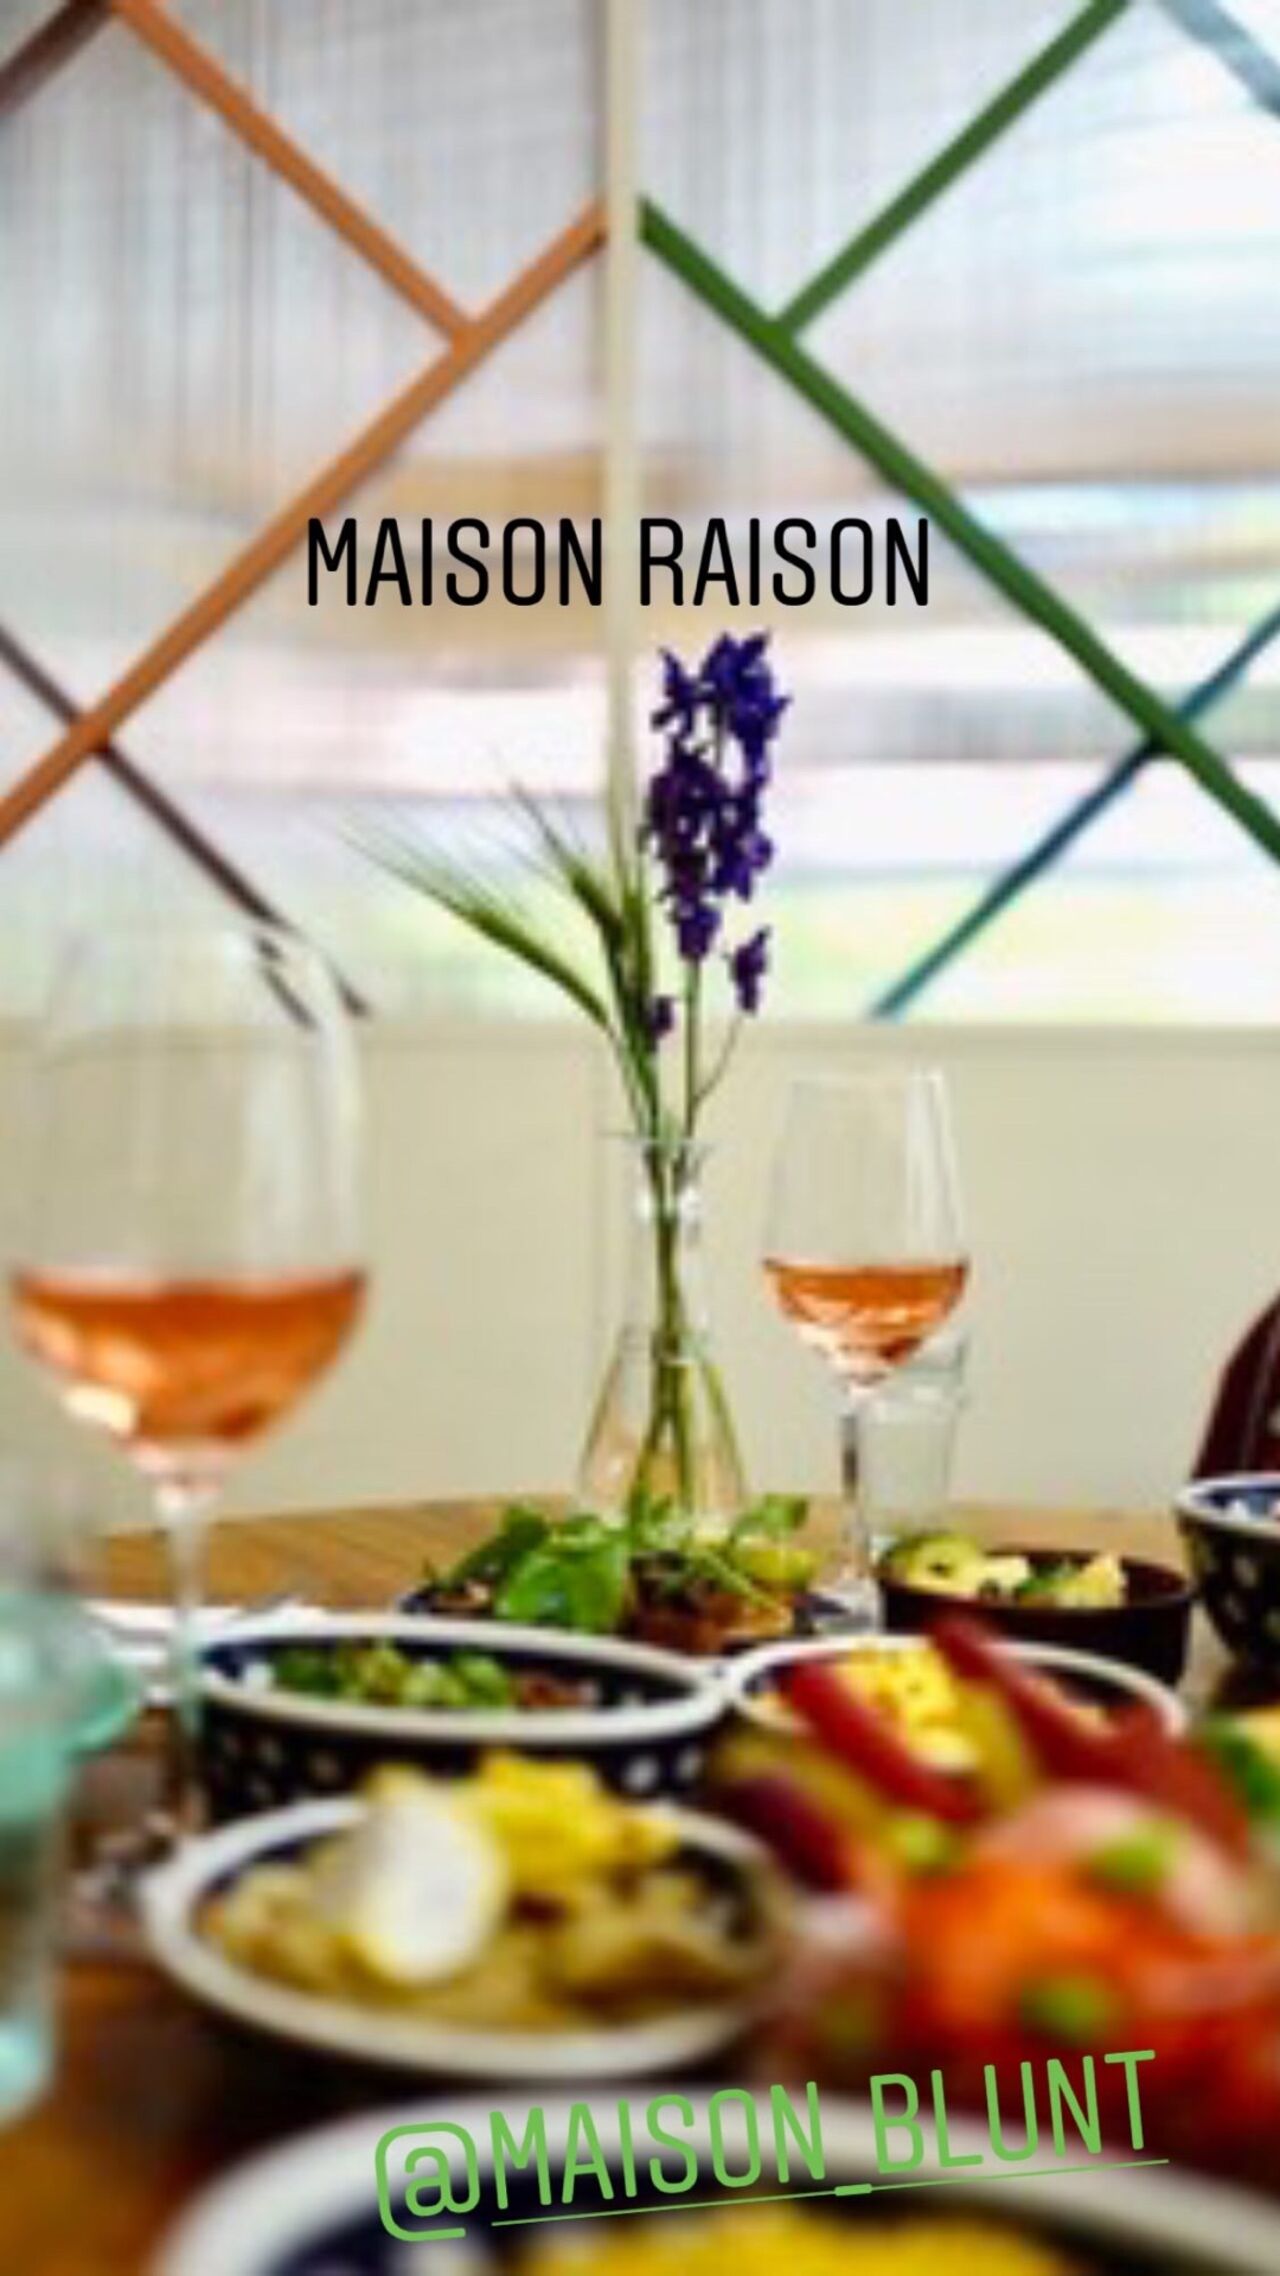 A photo of Maison Raison